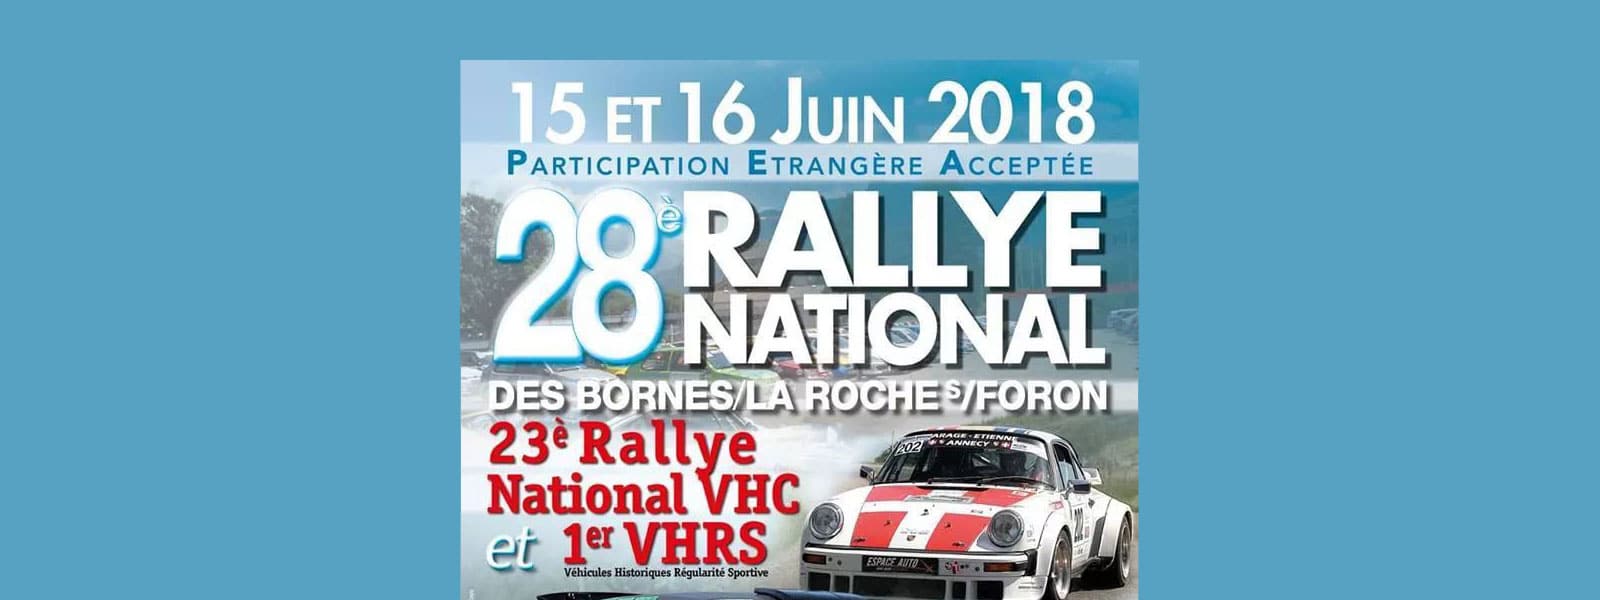 28ème rallye des Bornes/La Roche sur Foron